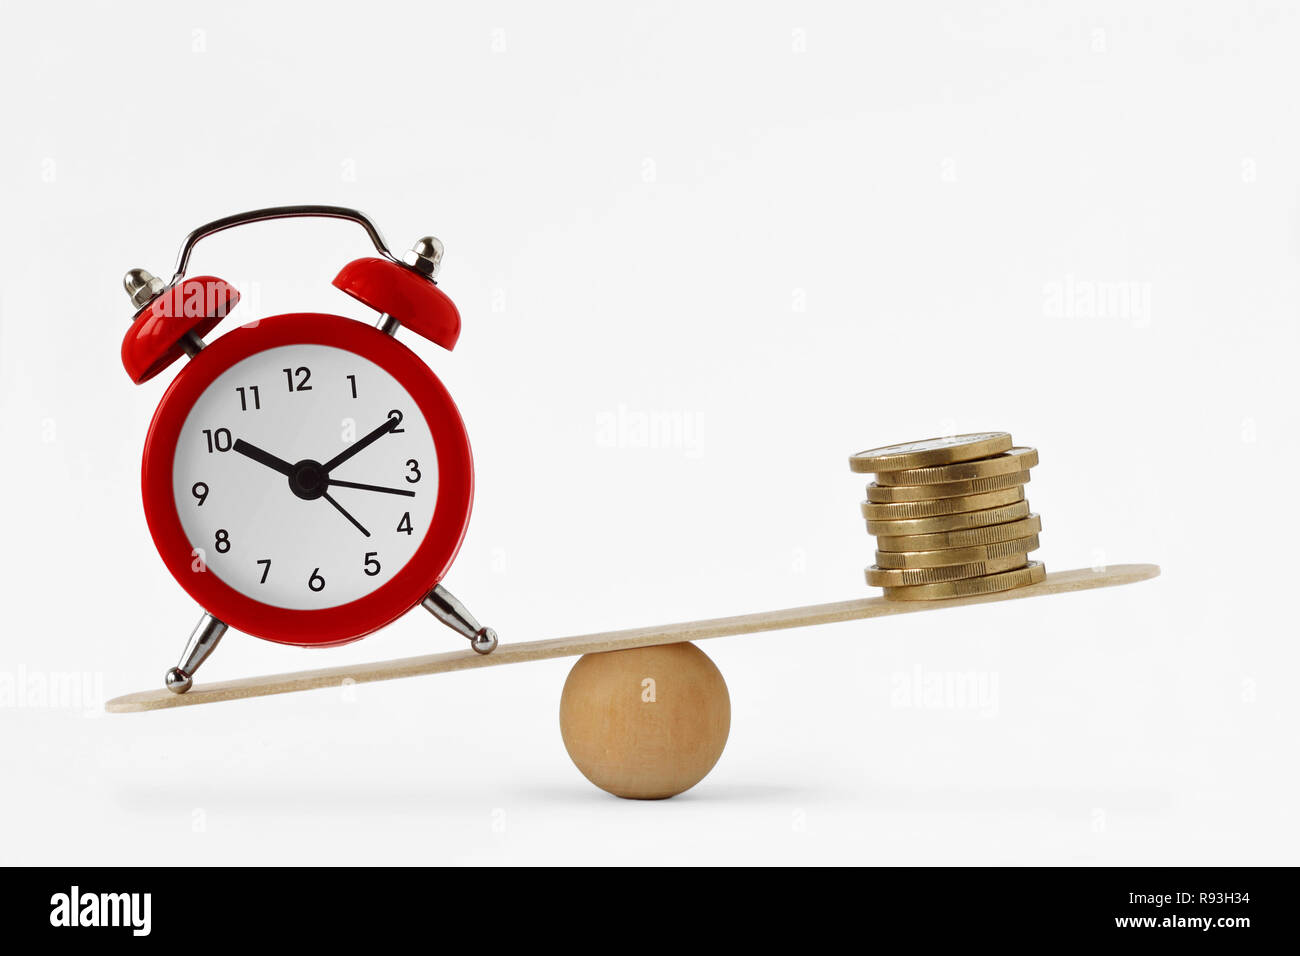 Uhr und Geld auf Skalen - Bedeutung von Zeit, Geld und Zeit Konzept Stockfoto